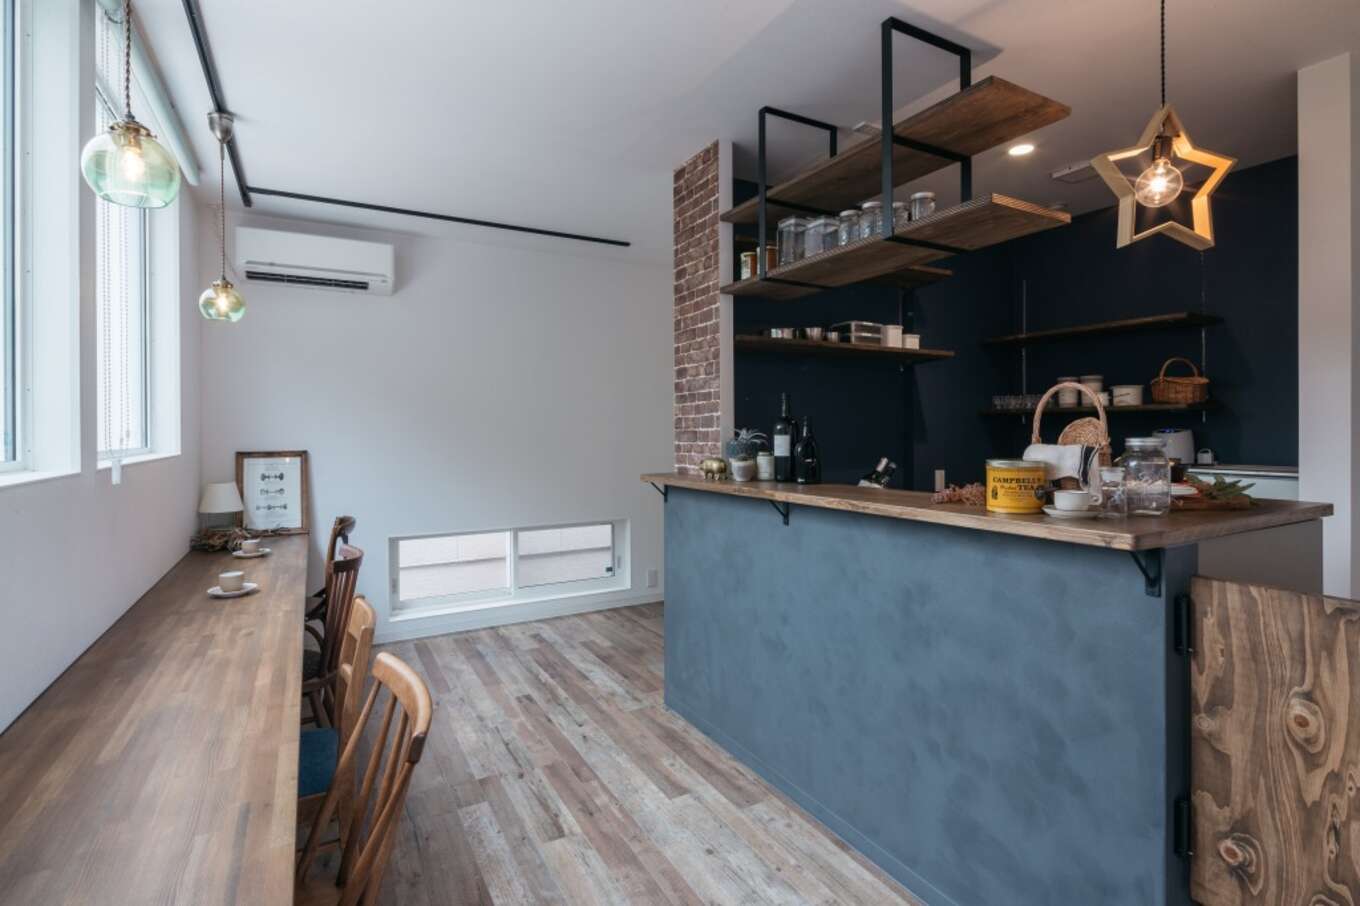 鹿児島県_腰壁がグレーのカフェのようなおしゃれな木目調のキッチンと窓際のカウンター